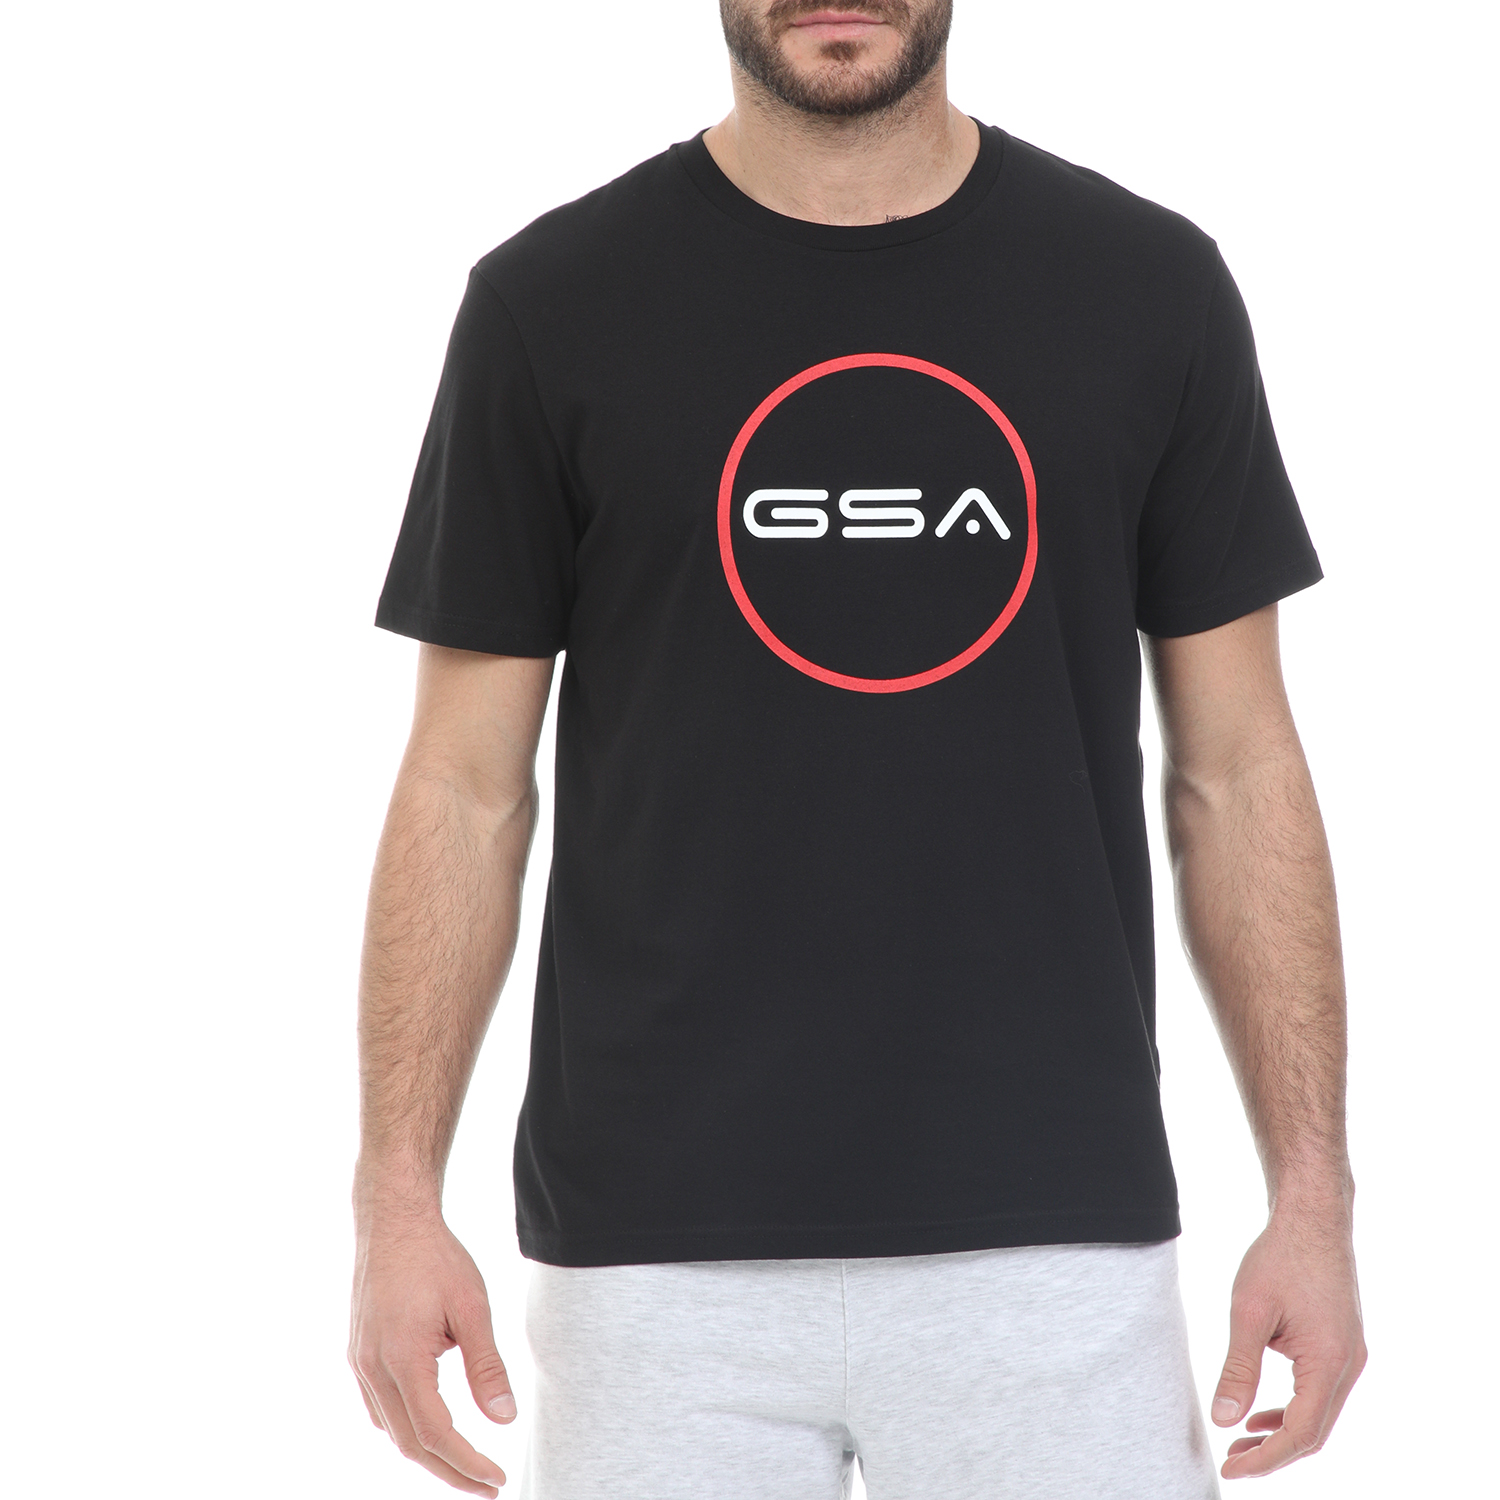 Ανδρικά/Ρούχα/Μπλούζες/Κοντομάνικες GSA - Ανδρικό t-shirt GSA ORGANIC PLUS SUPERLOGO TRE μαύρο